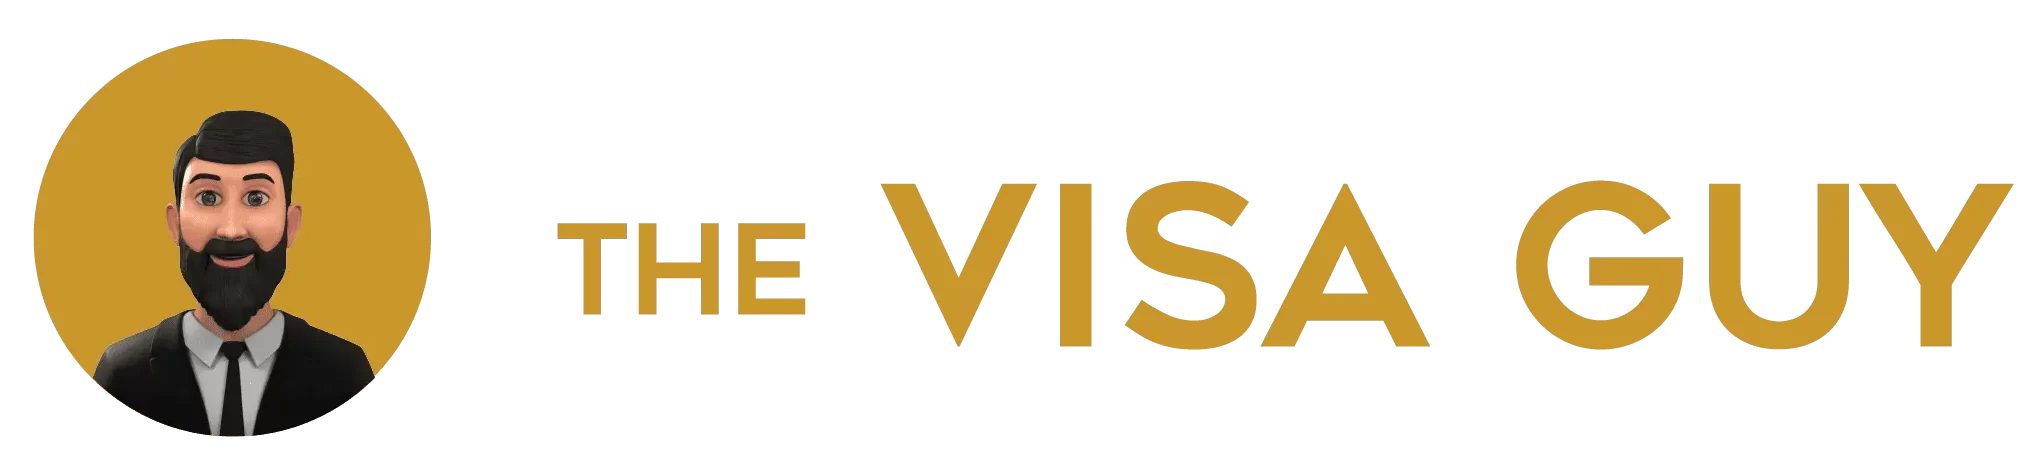 The Visa Guy UAE logo